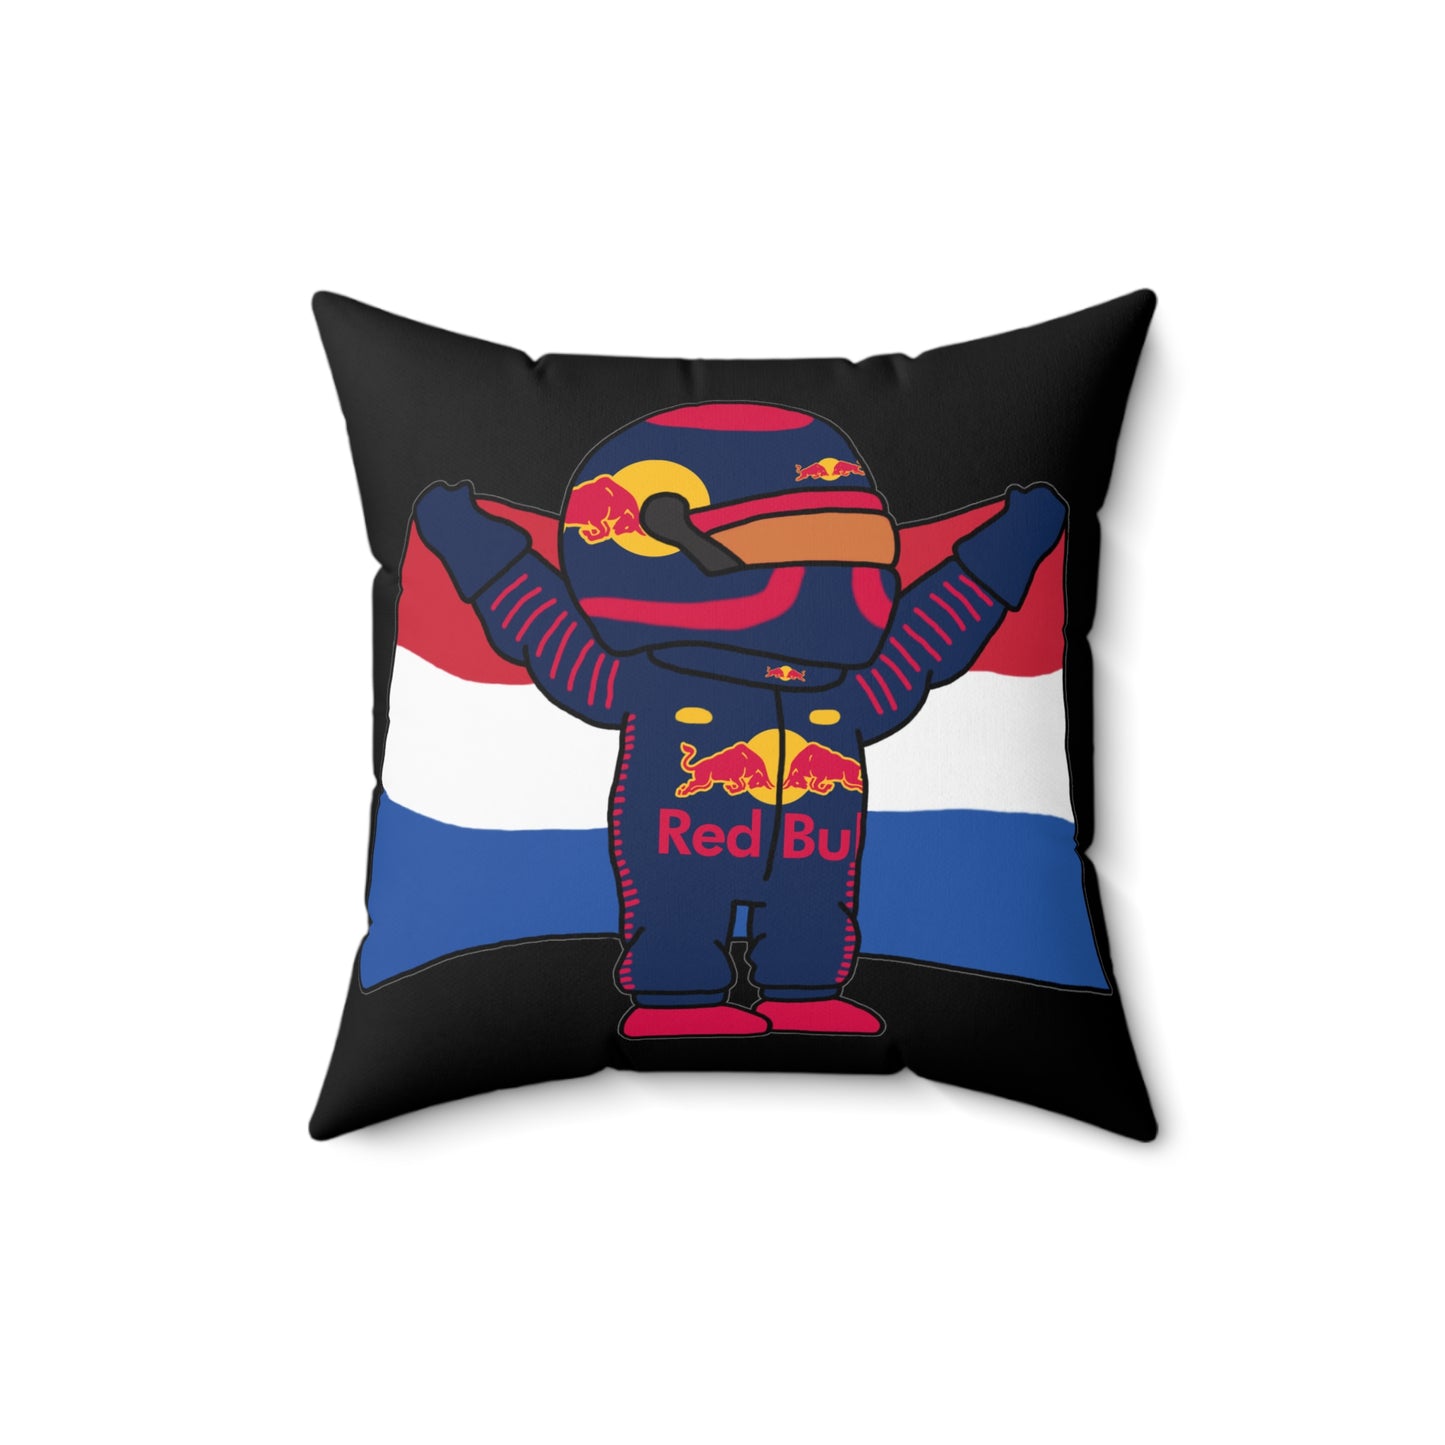 NeVerStappen Red Bull Formula 1 F1 Max Verstappen Pillow Next Cult Brand F1, Max Verstappen, Red Bull